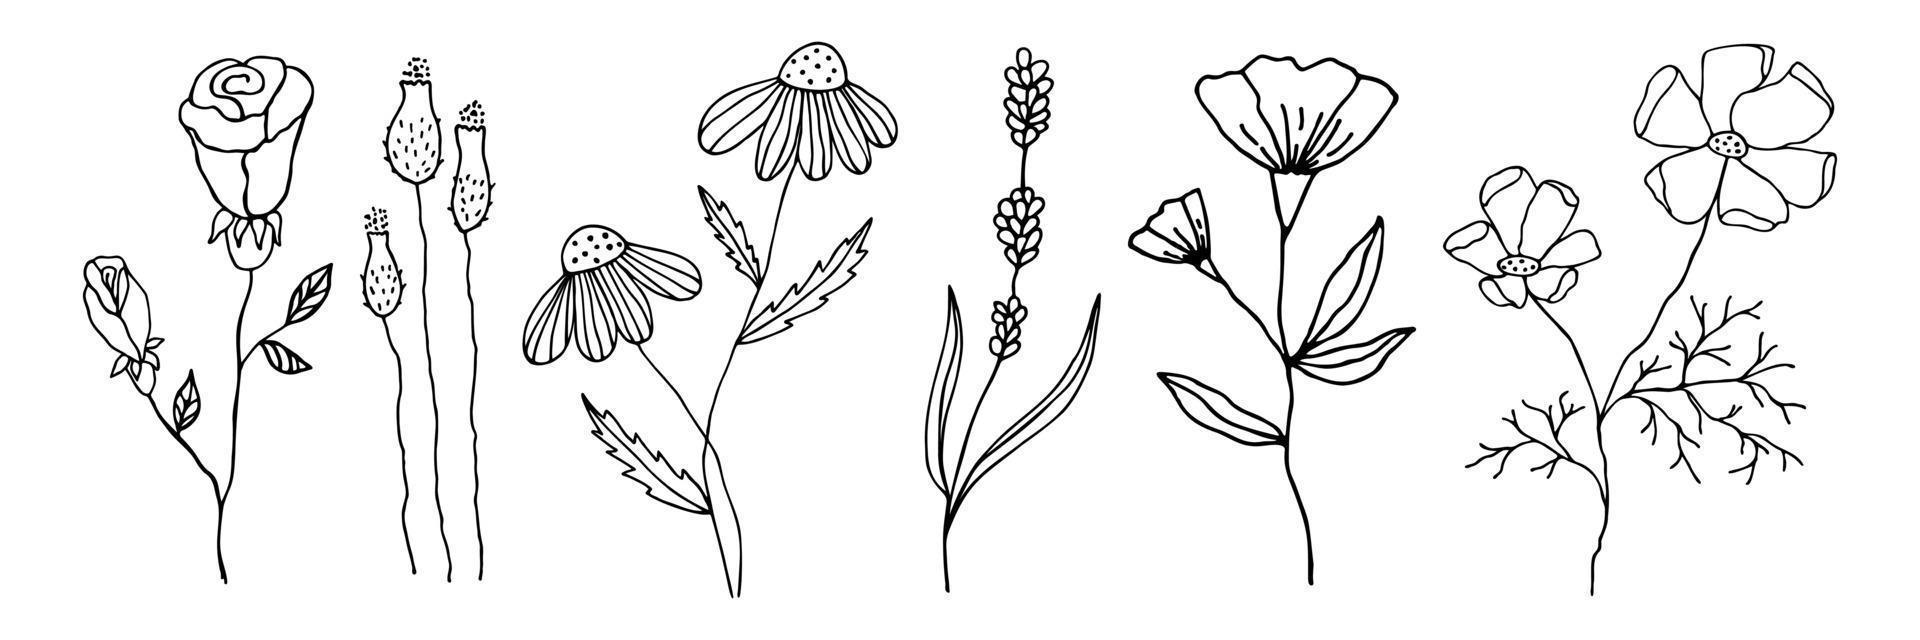 collezione di fiori doodle in uno stile lineare. set di elementi floreali per qualsiasi disegno. vettore contorno nero fiori disegnati a mano isolati su sfondo bianco.